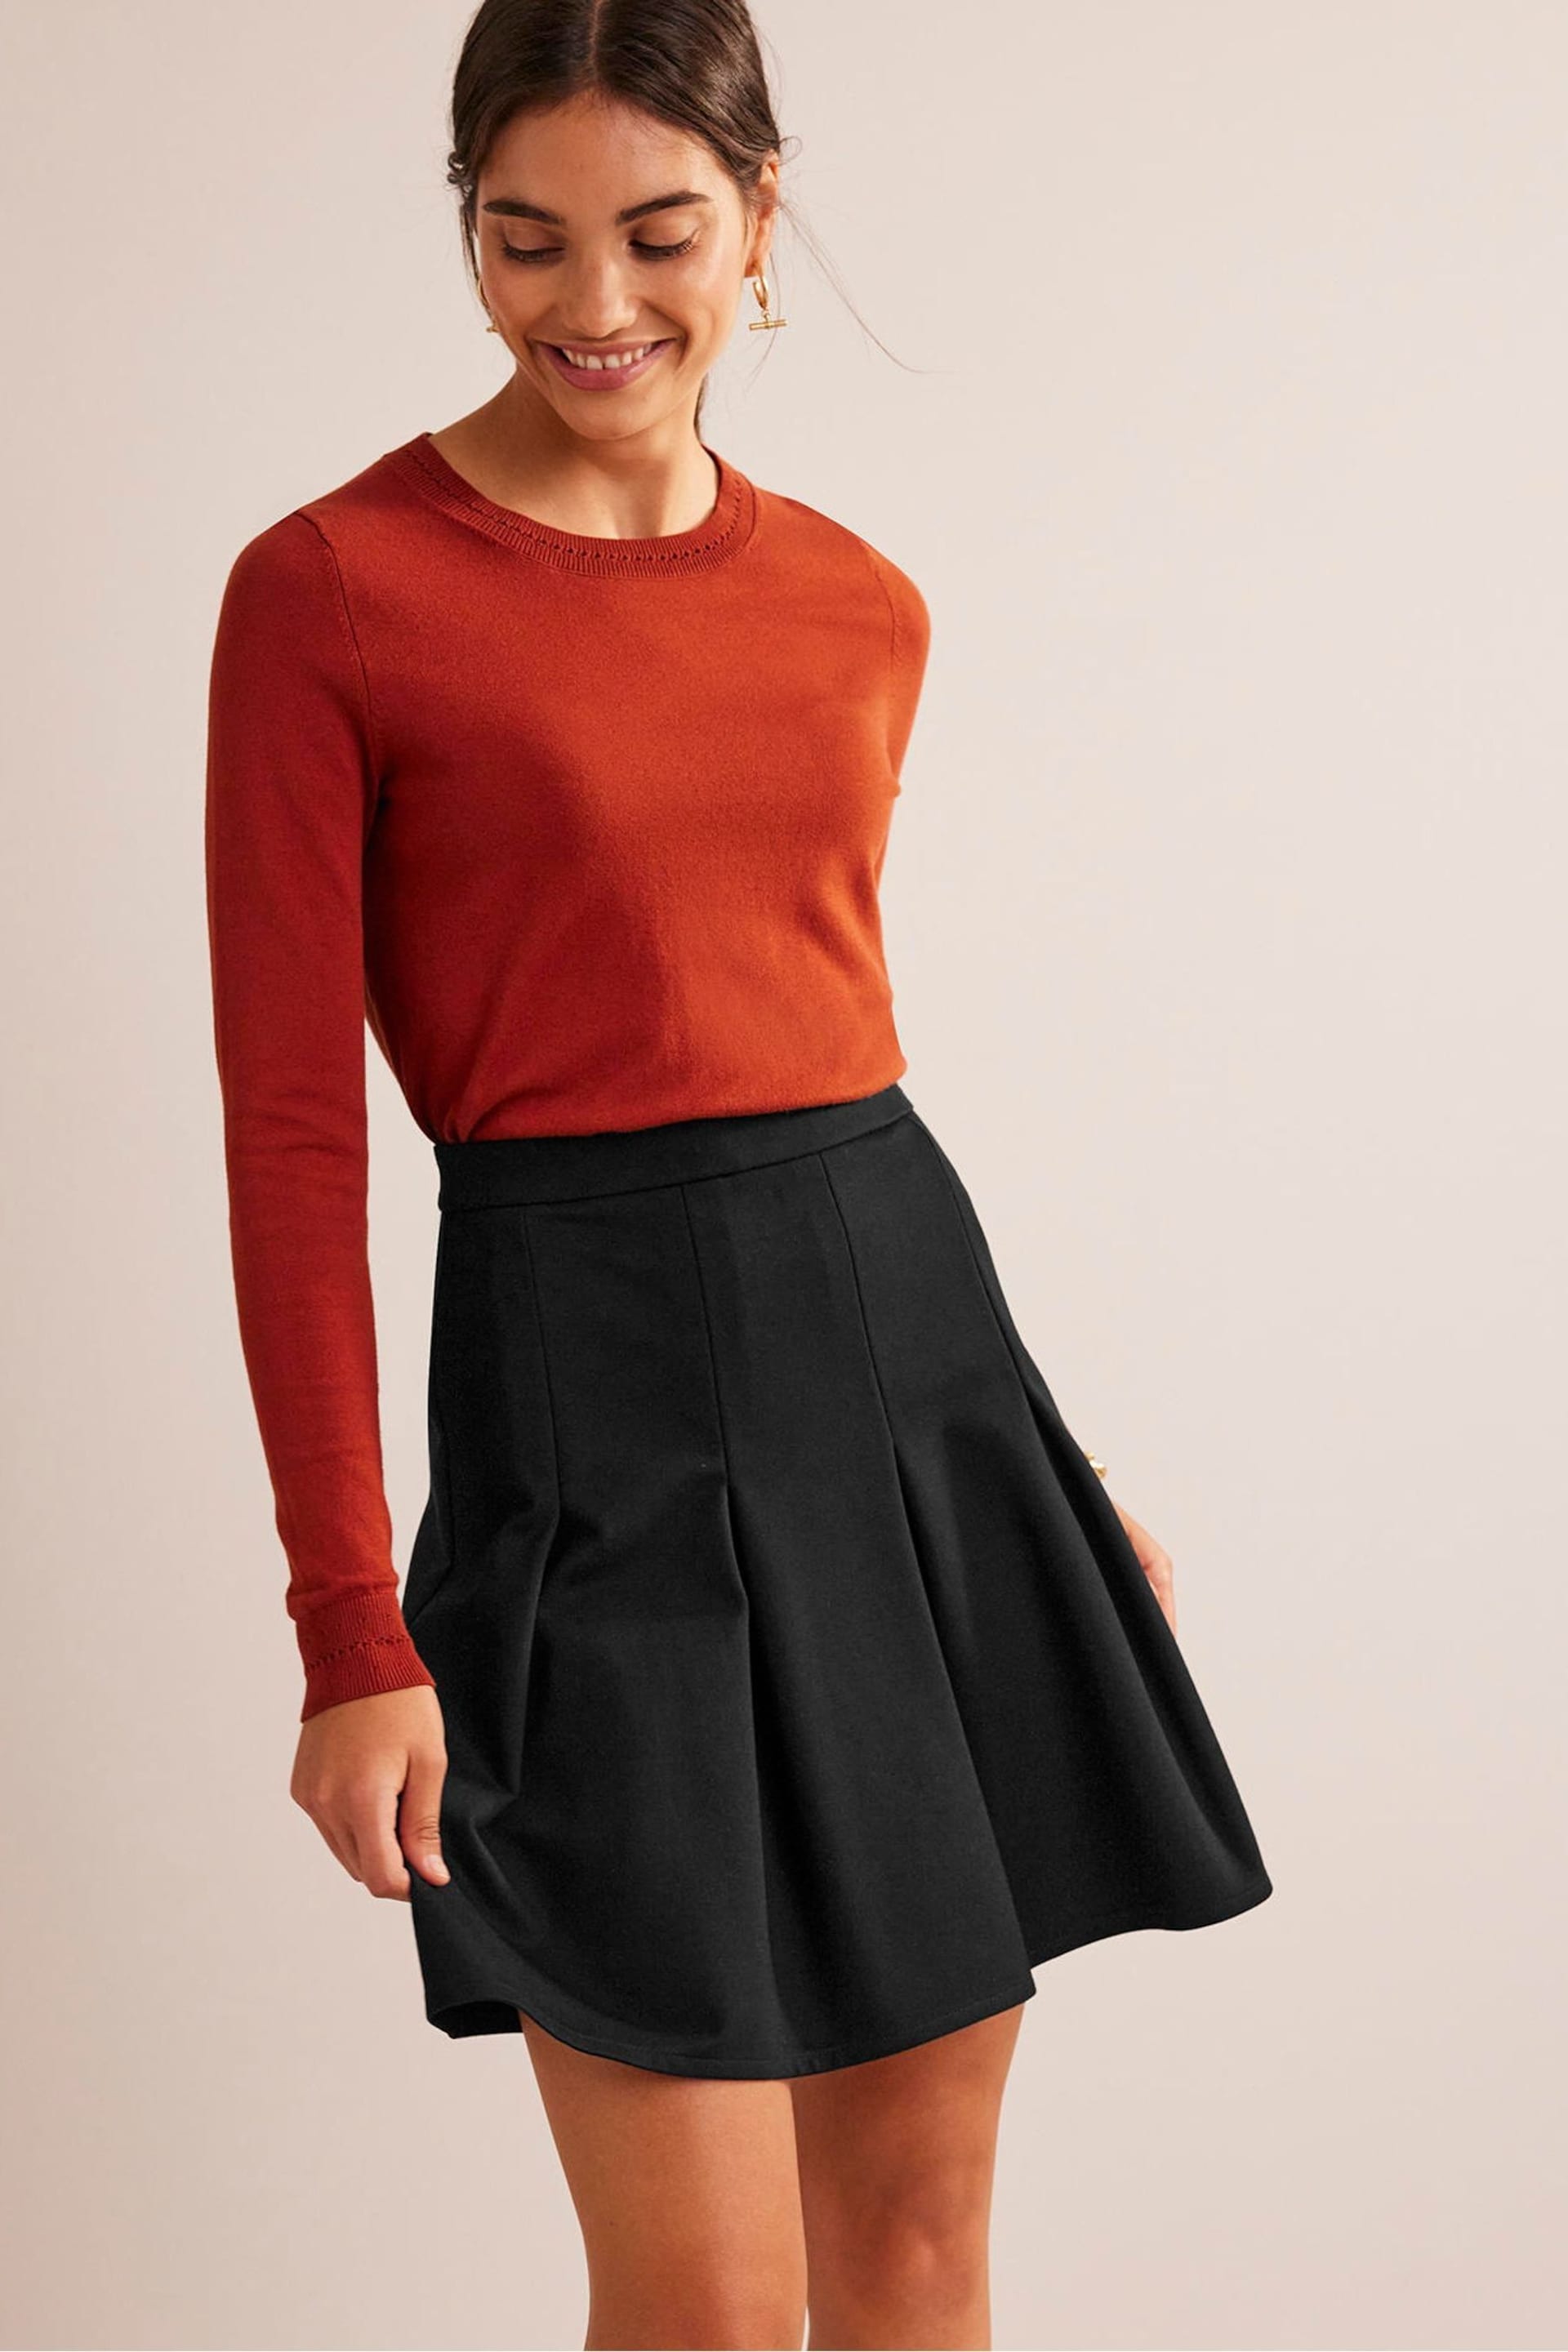 Boden Black Flippy Ponte Mini Skirt - Image 3 of 5